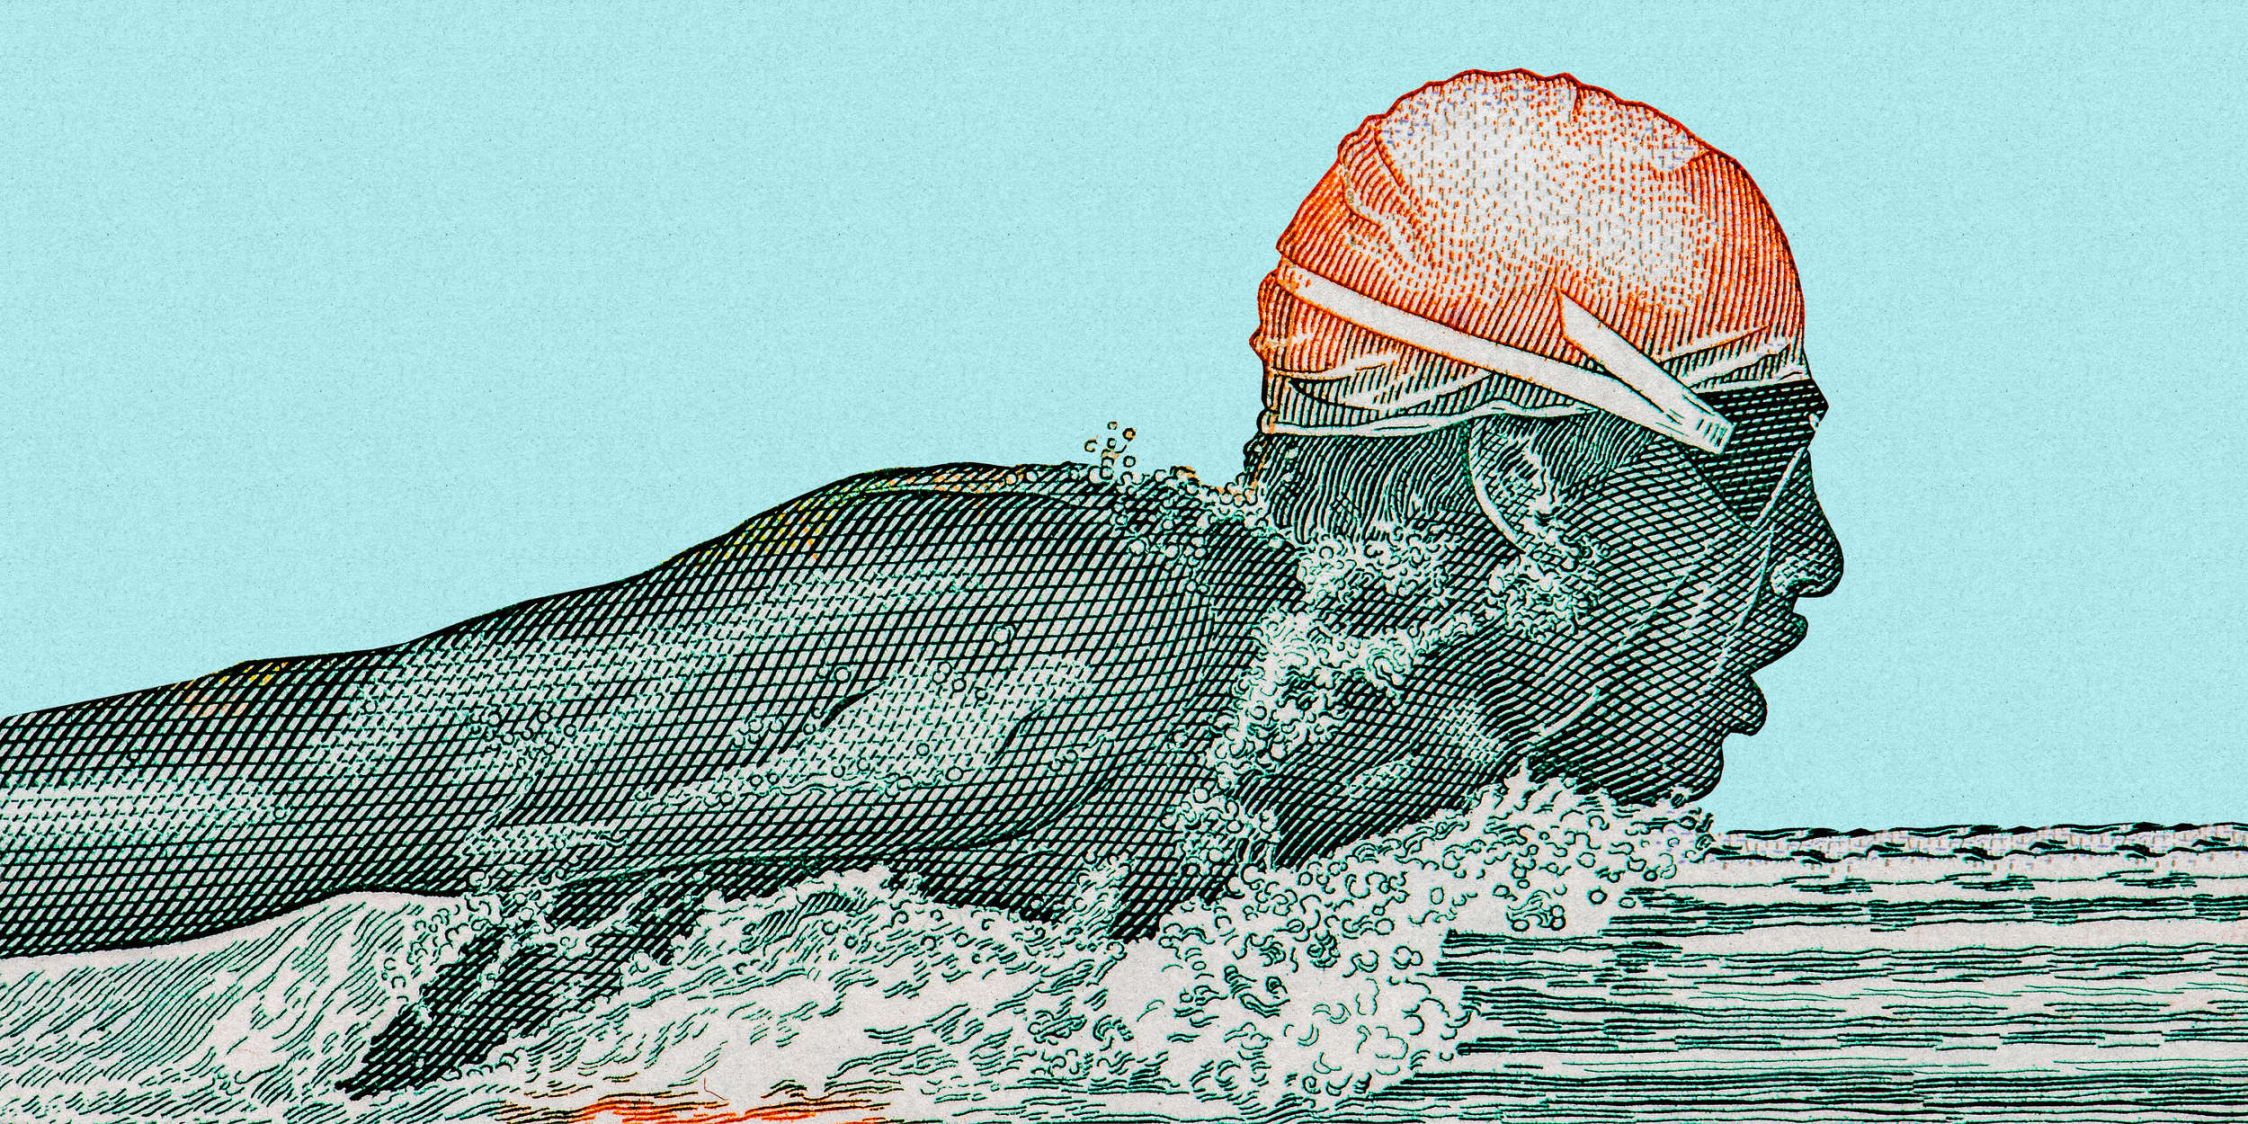             Fotomural »aquaman« - nadador en diseño pixelado - petróleo con textura de papel kraft | Material no tejido liso, ligeramente nacarado y brillante
        